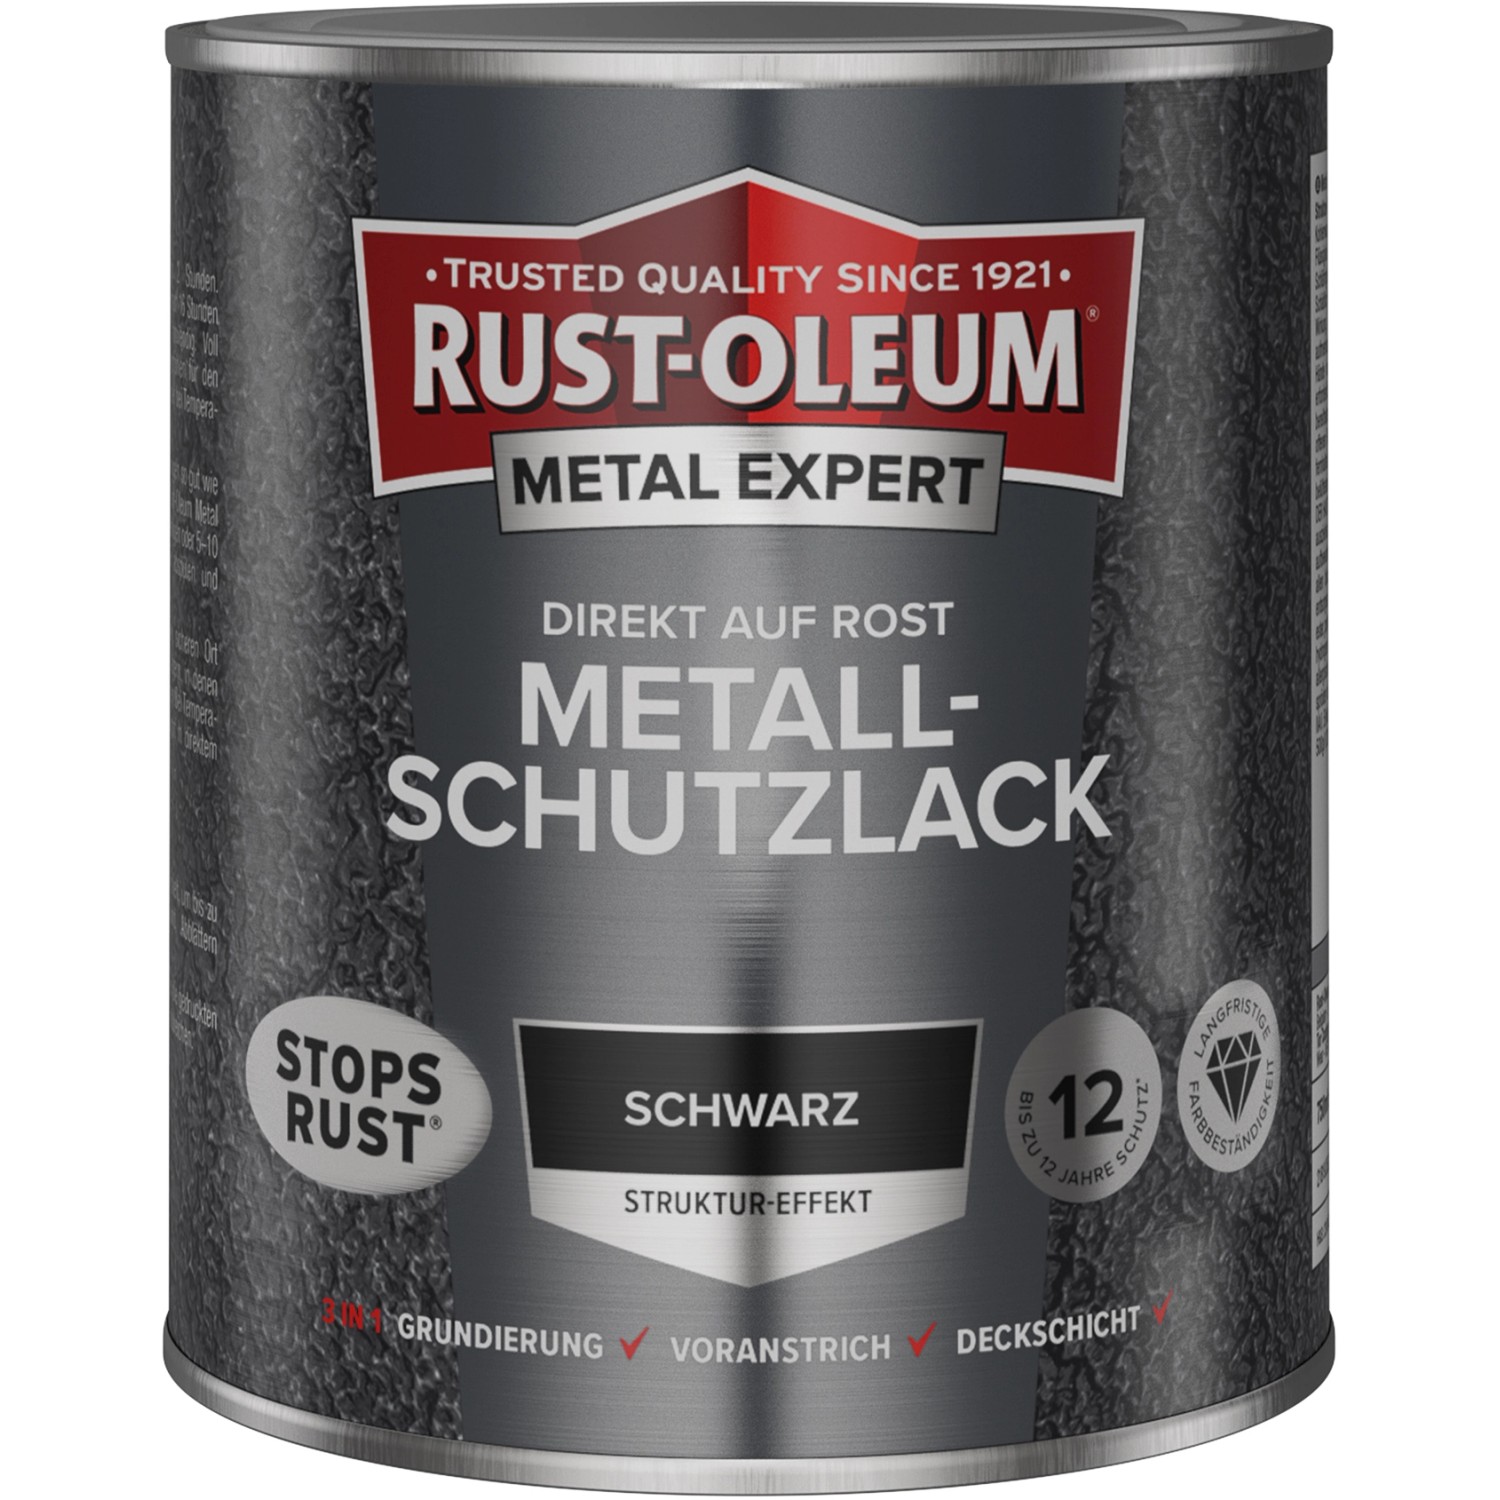 Rust-Oleum Metal Expert Struktur-Effekt Schwarz 750 ml von Rust-Oleum